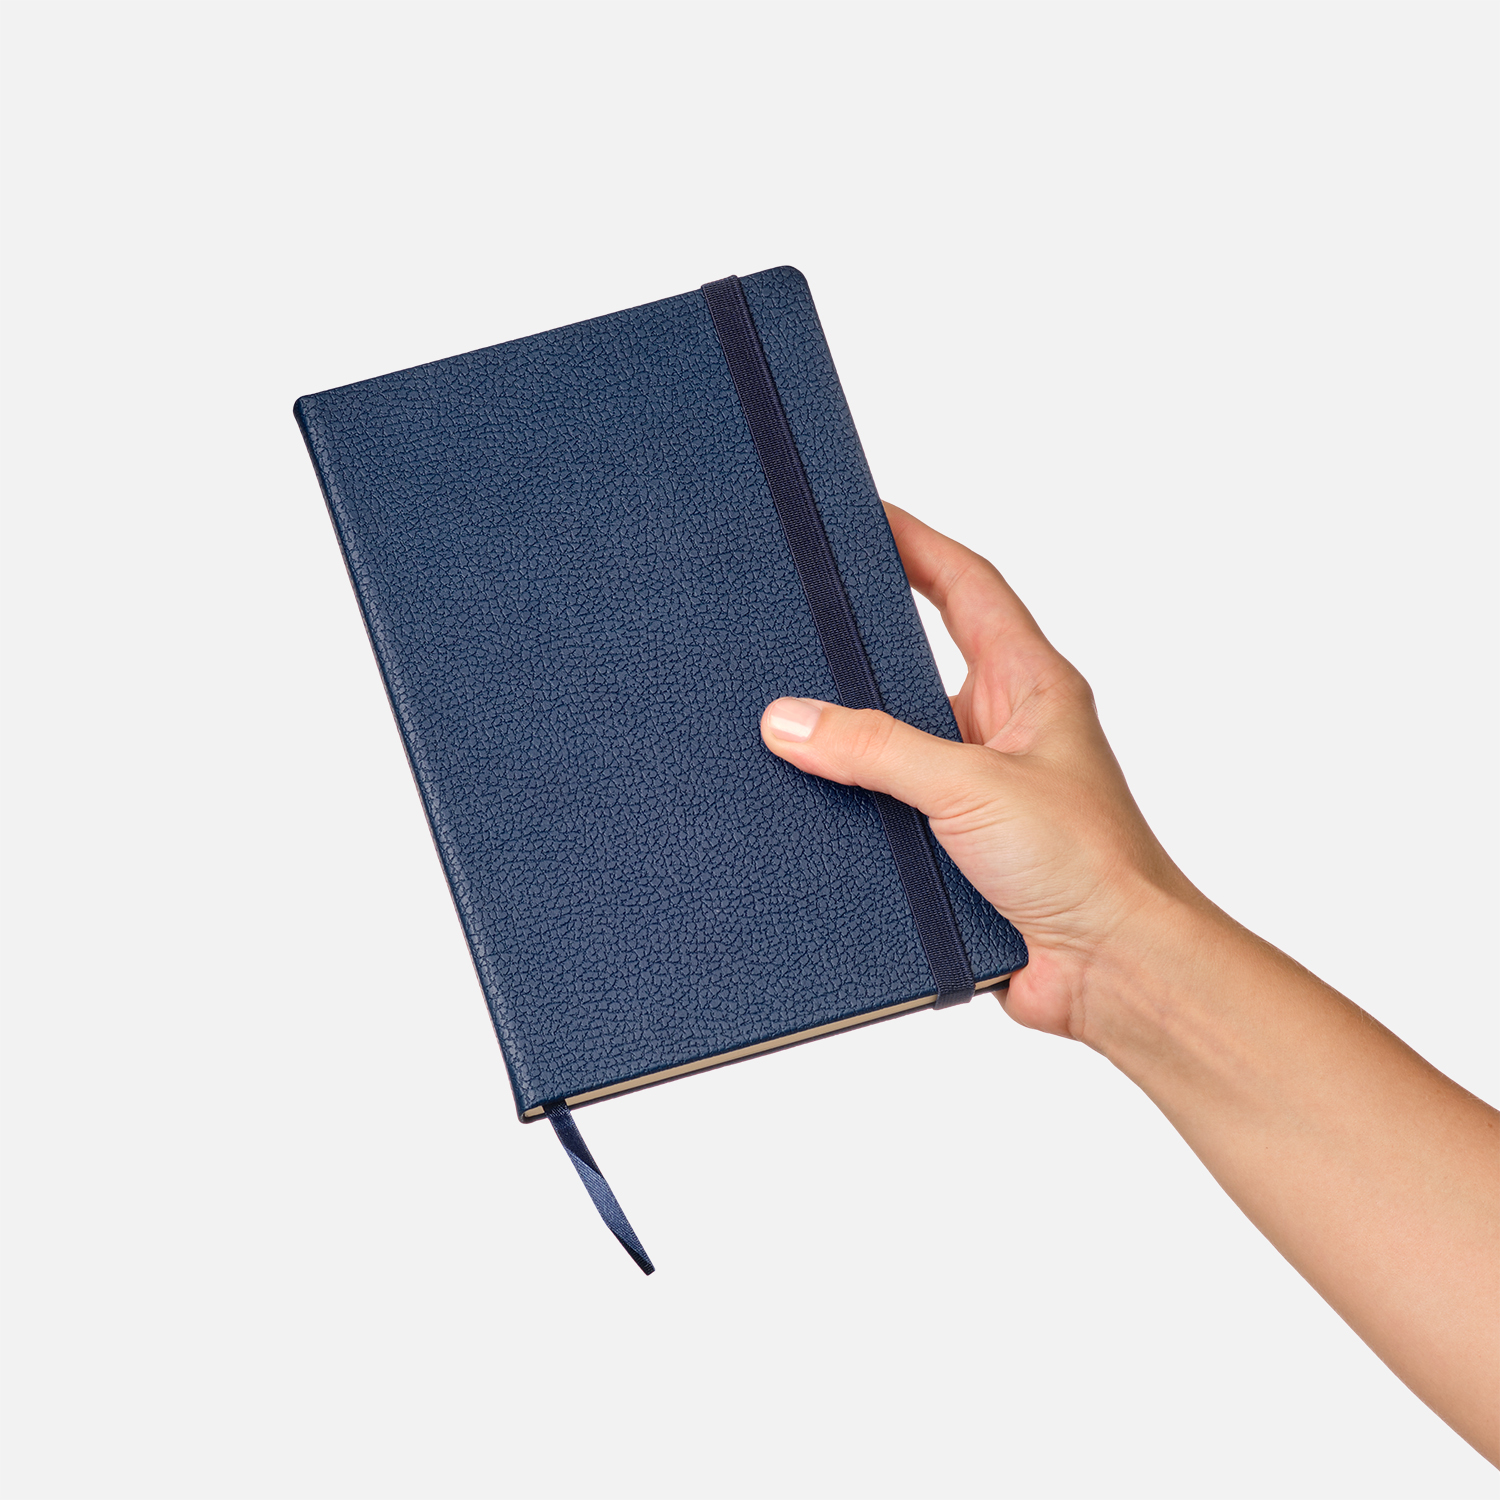 Ежедневник недатированный Dallas Btobook, синий (без упаковки, без стикера)